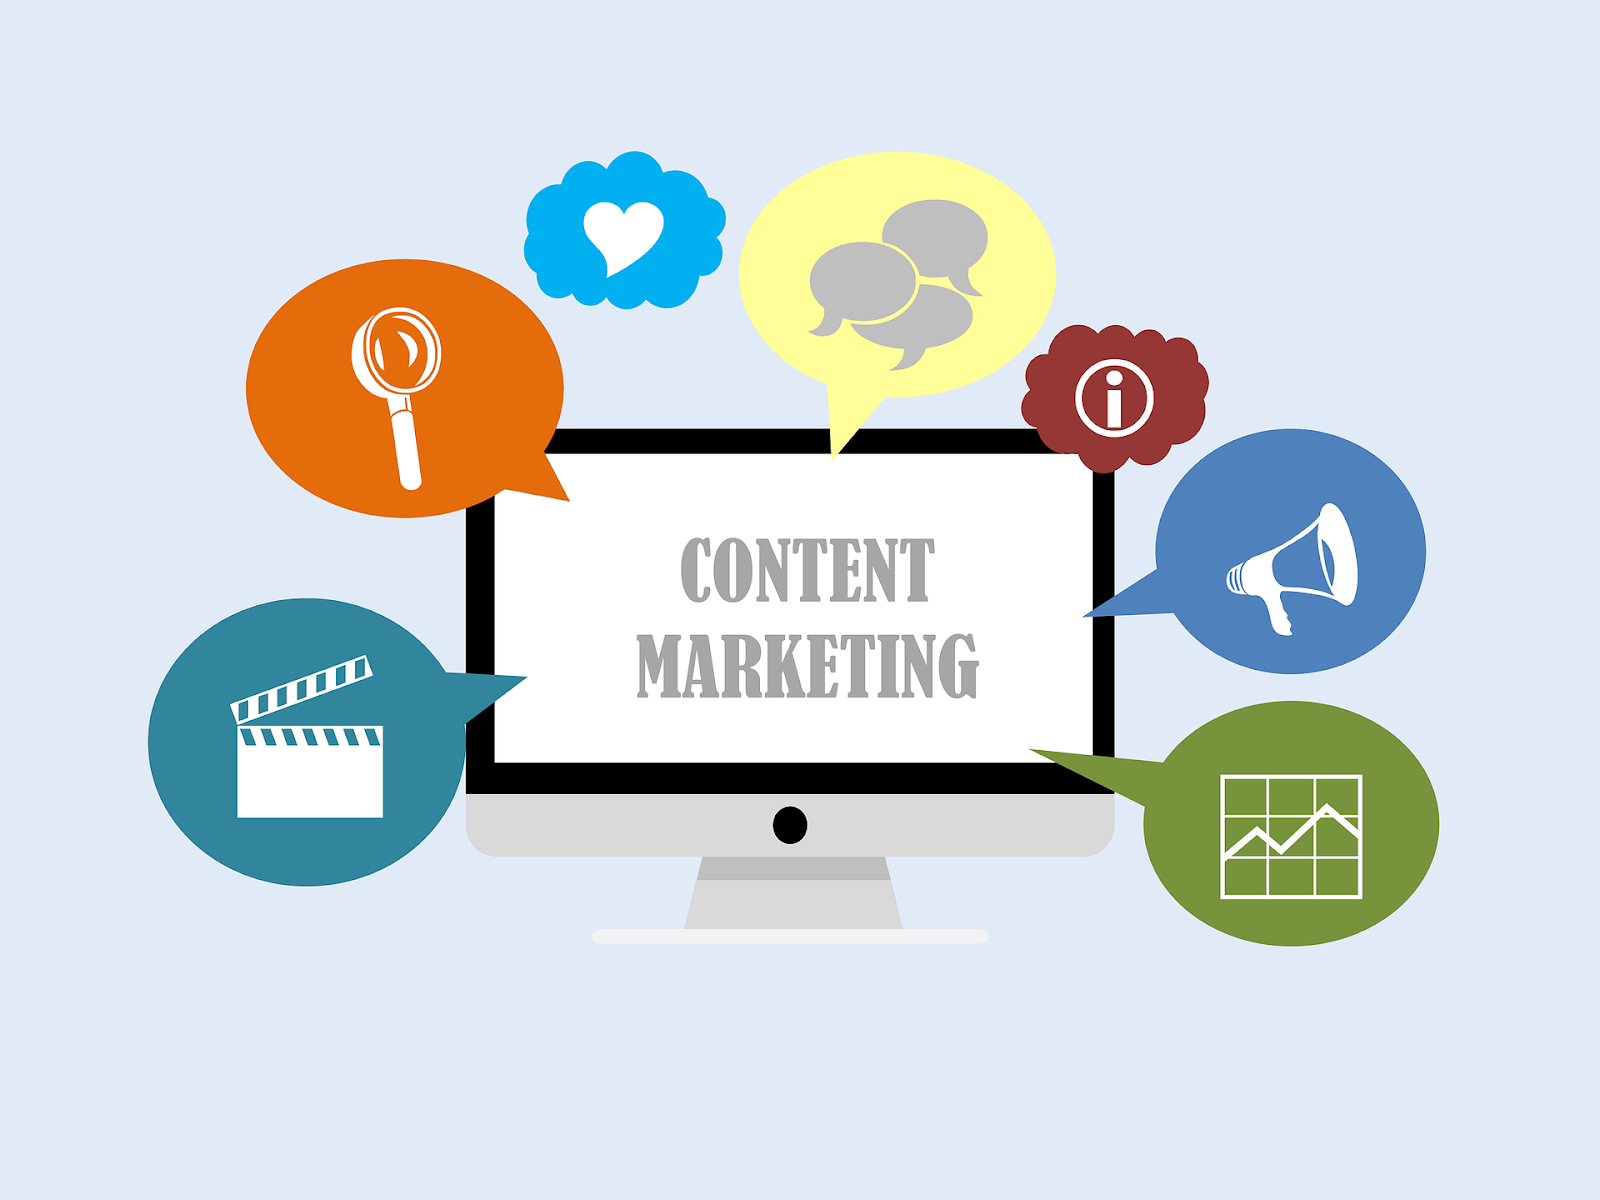 Content marketing inbound leads